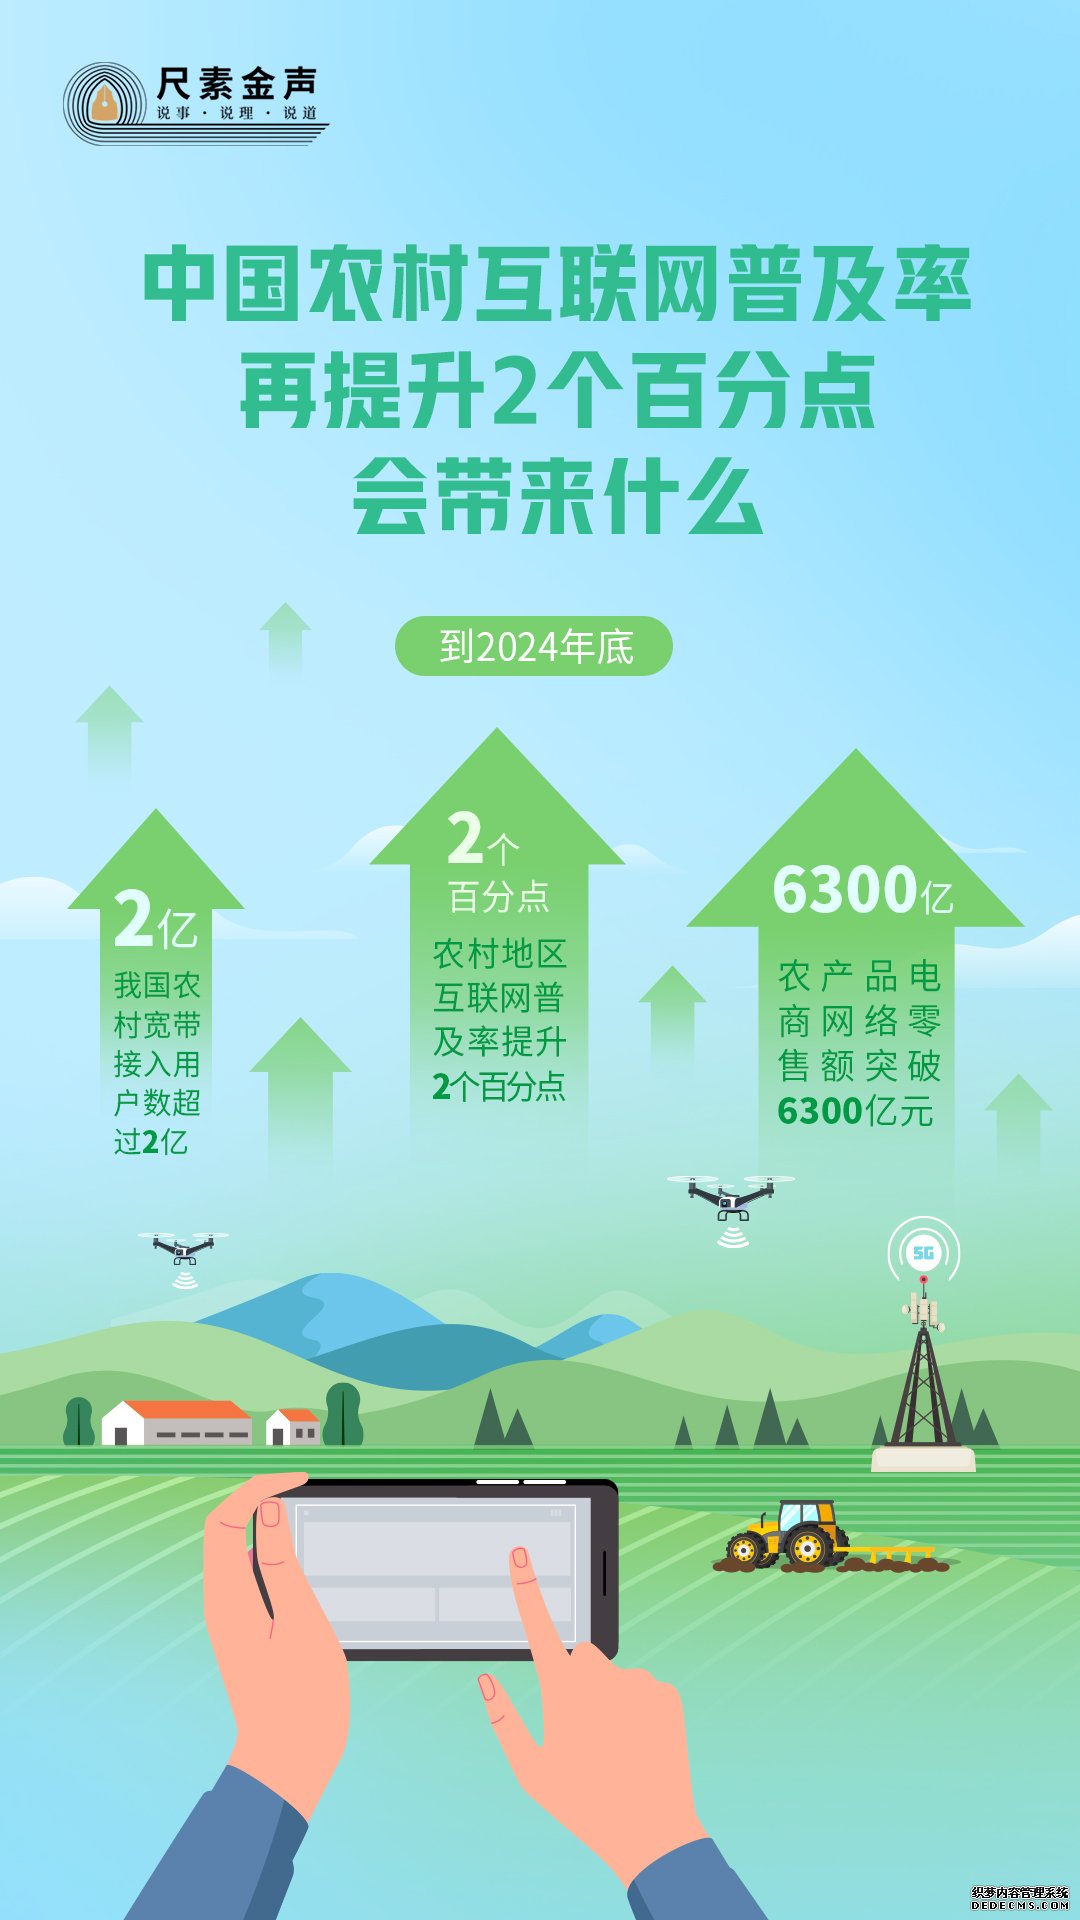 尺素金声｜中国农村互联网普及率再提升2个百分点，会带来什么